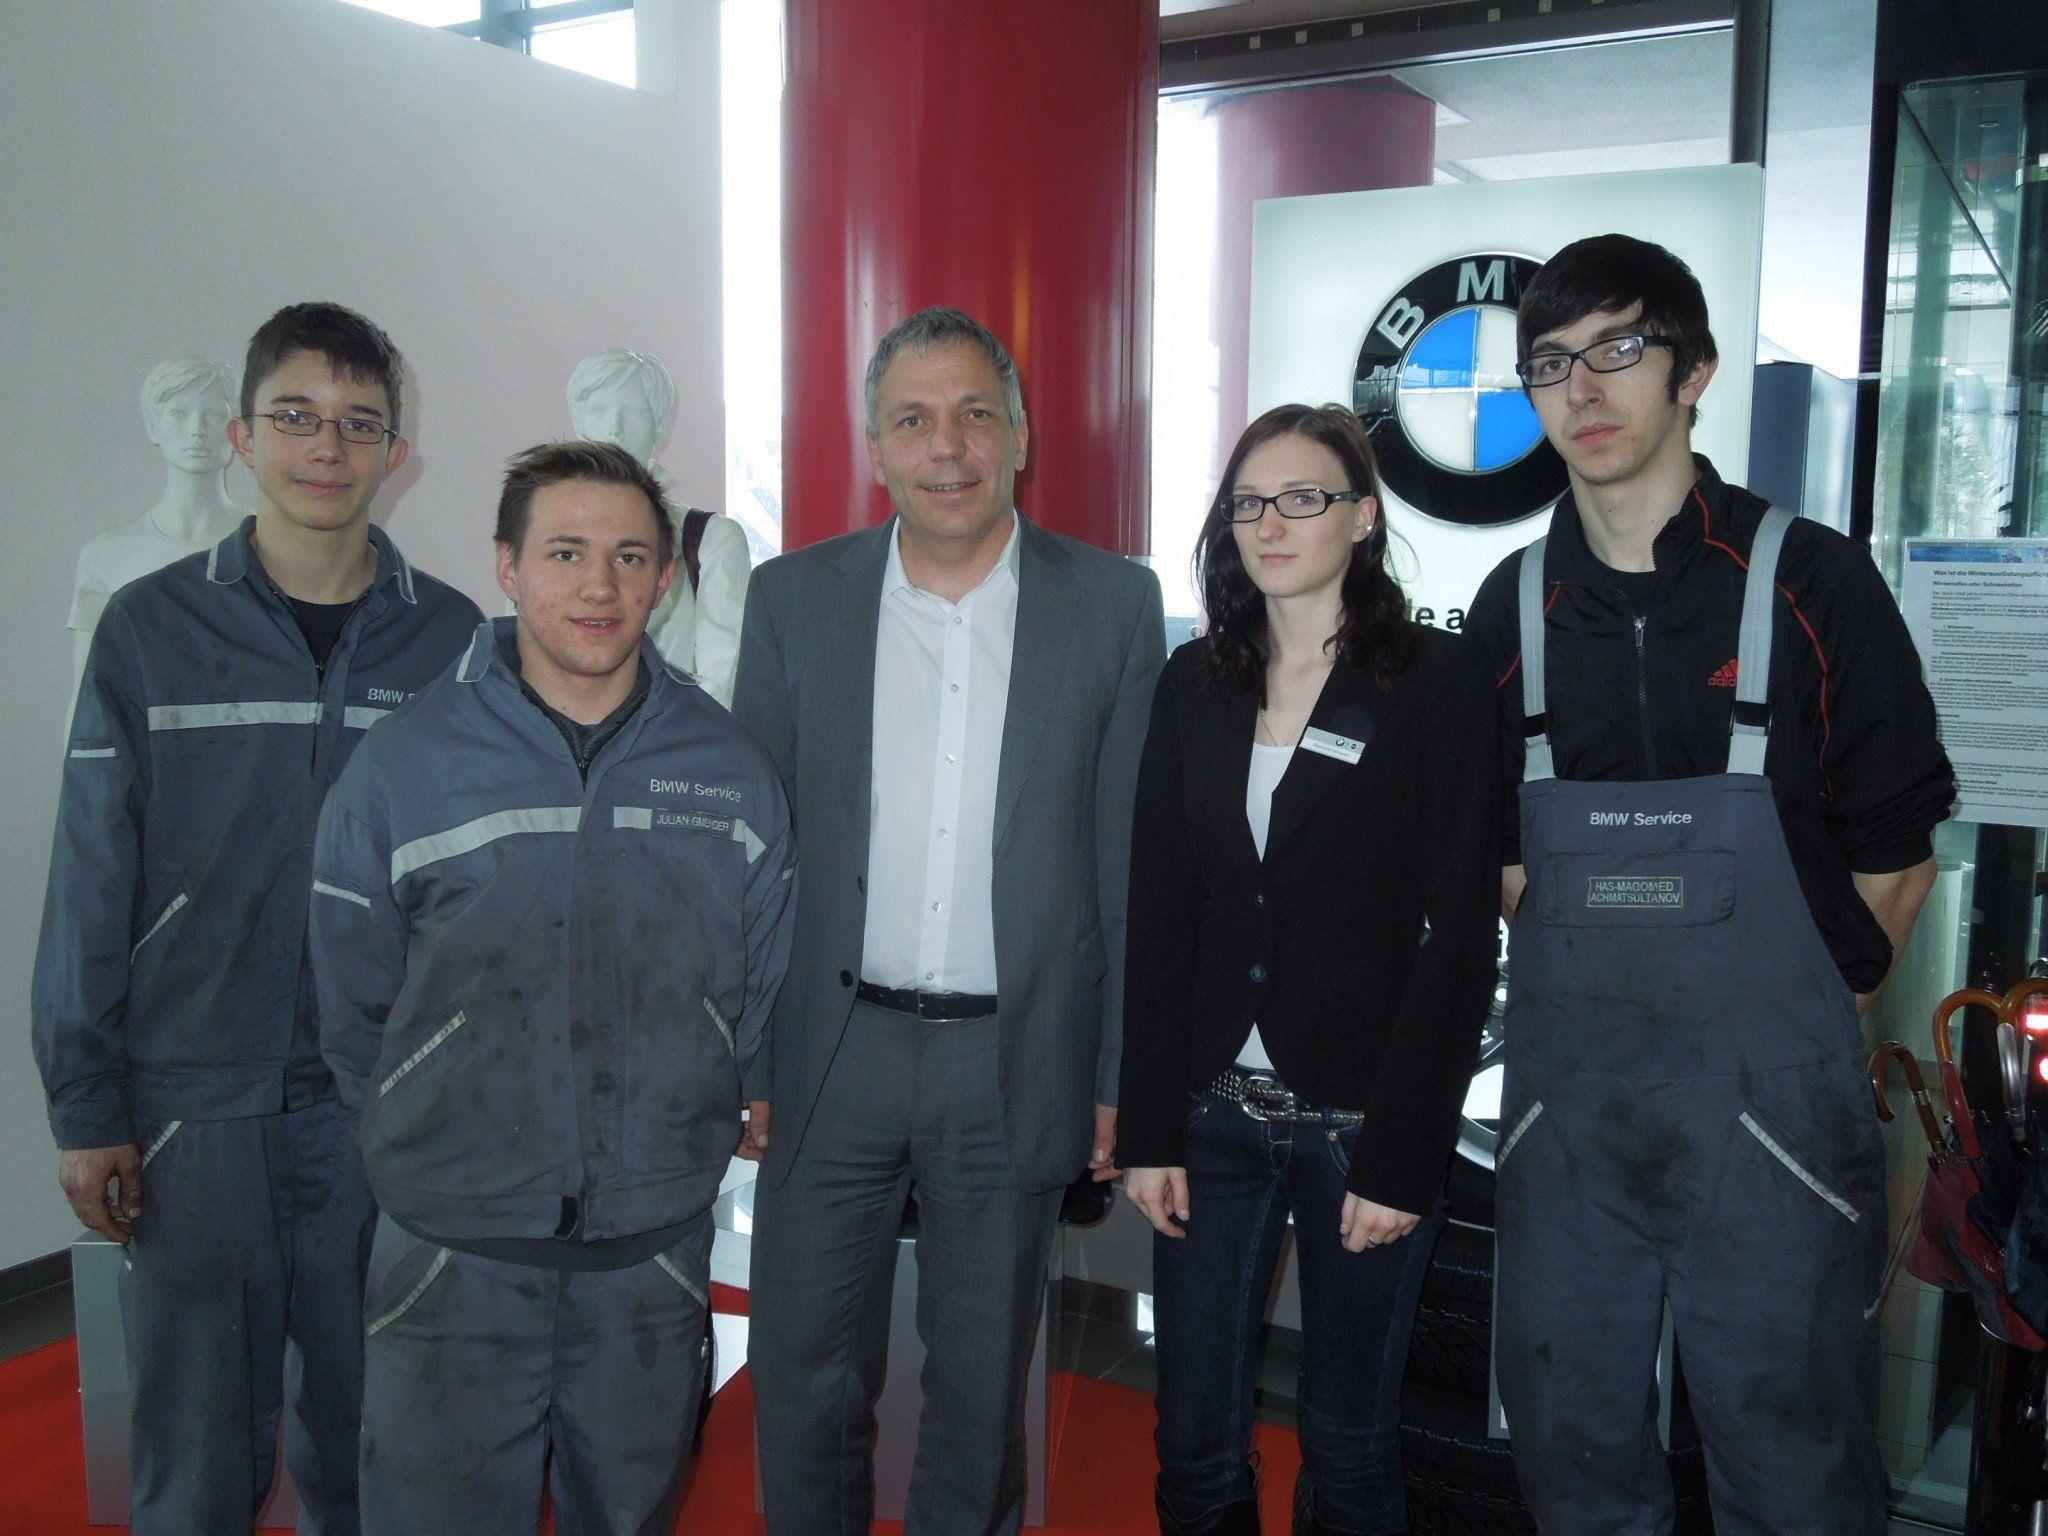 Die Lehrlinge bei BMW Unterberger erhalten viel Unterstützung, schätzen aber gleichzeitig, dass sie sehr selbständig sein können.